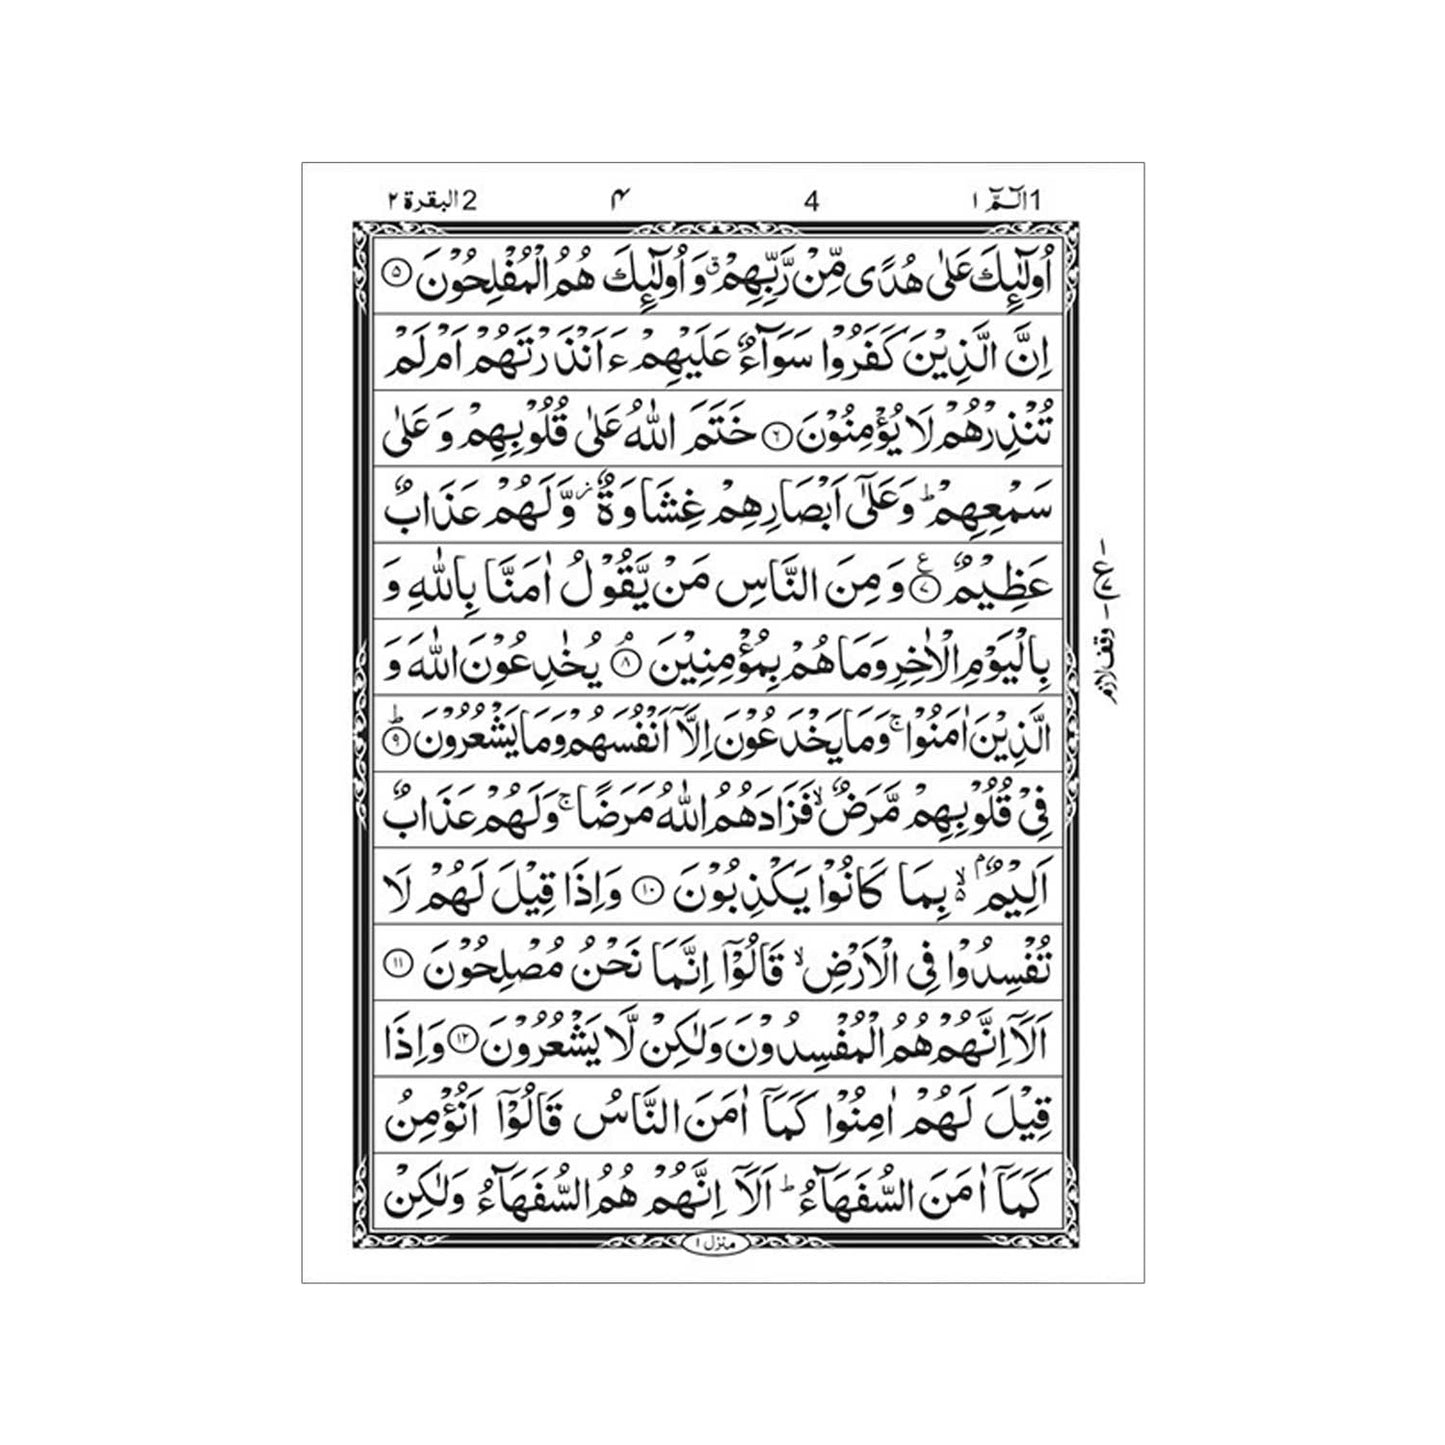 [19/P] Al-Quran-ul-Kareem in 13 Lines (Without Translation - Pocket Size)